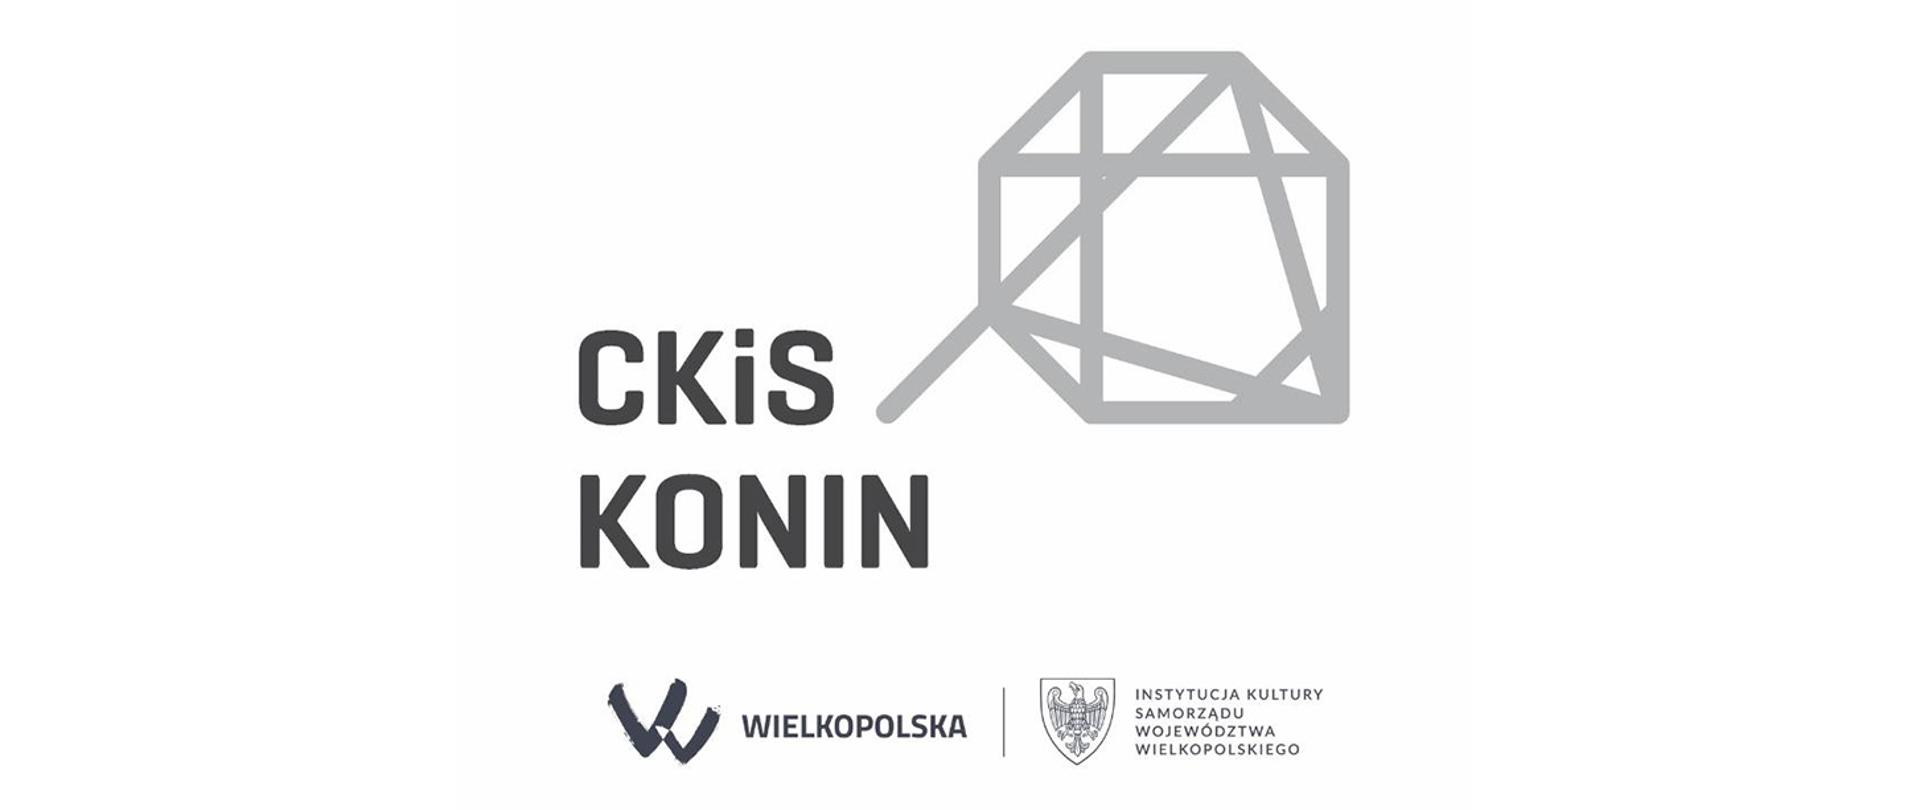 Grafika przedstawia logo CkiS Konin.